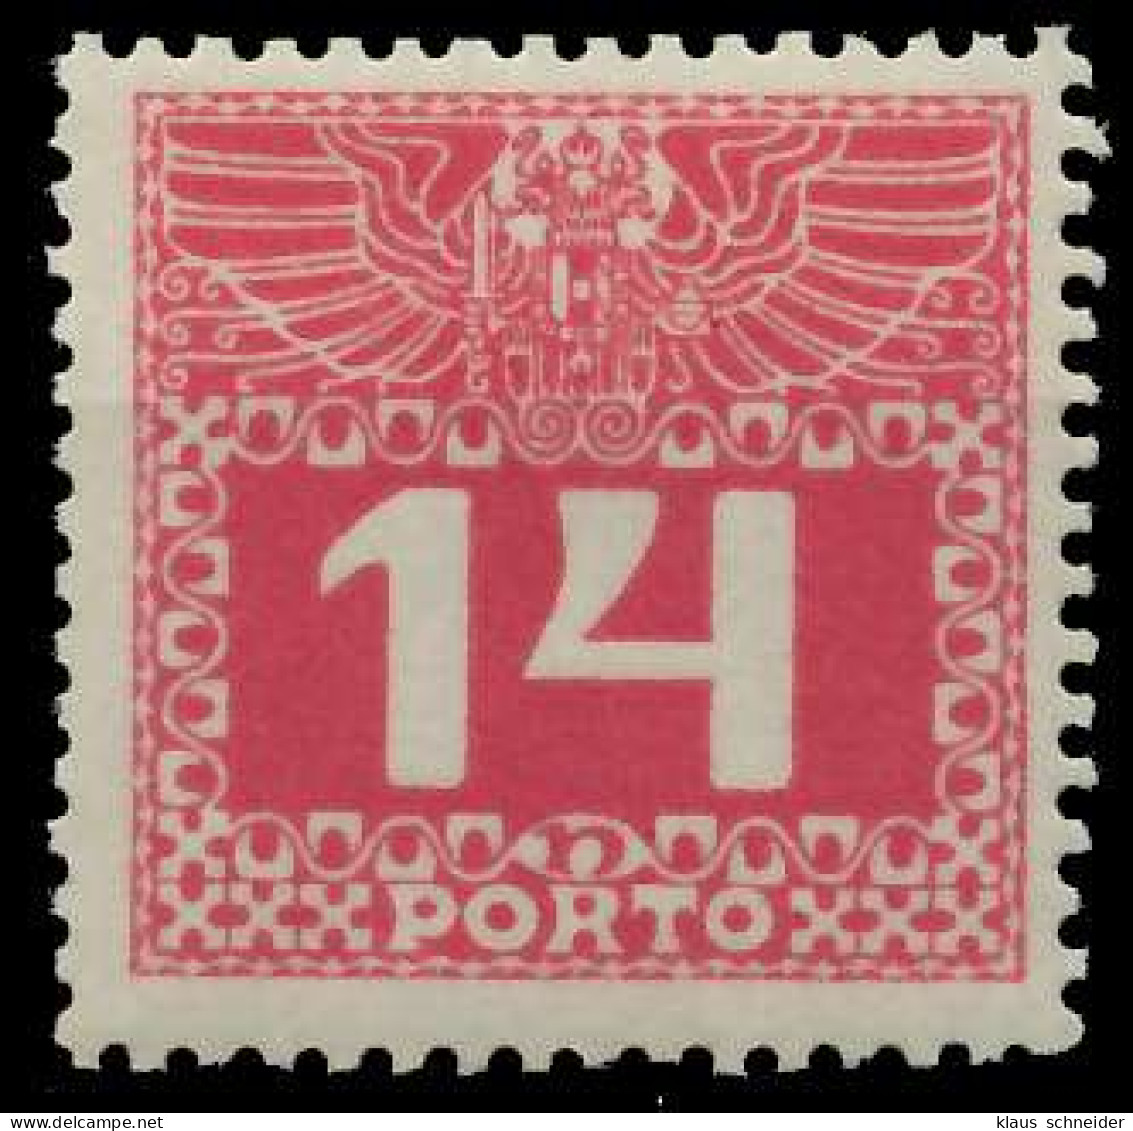 ÖSTERREICH PORTOMARKEN 1908 11 Nr 39z Postfrisch X74292A - Portomarken